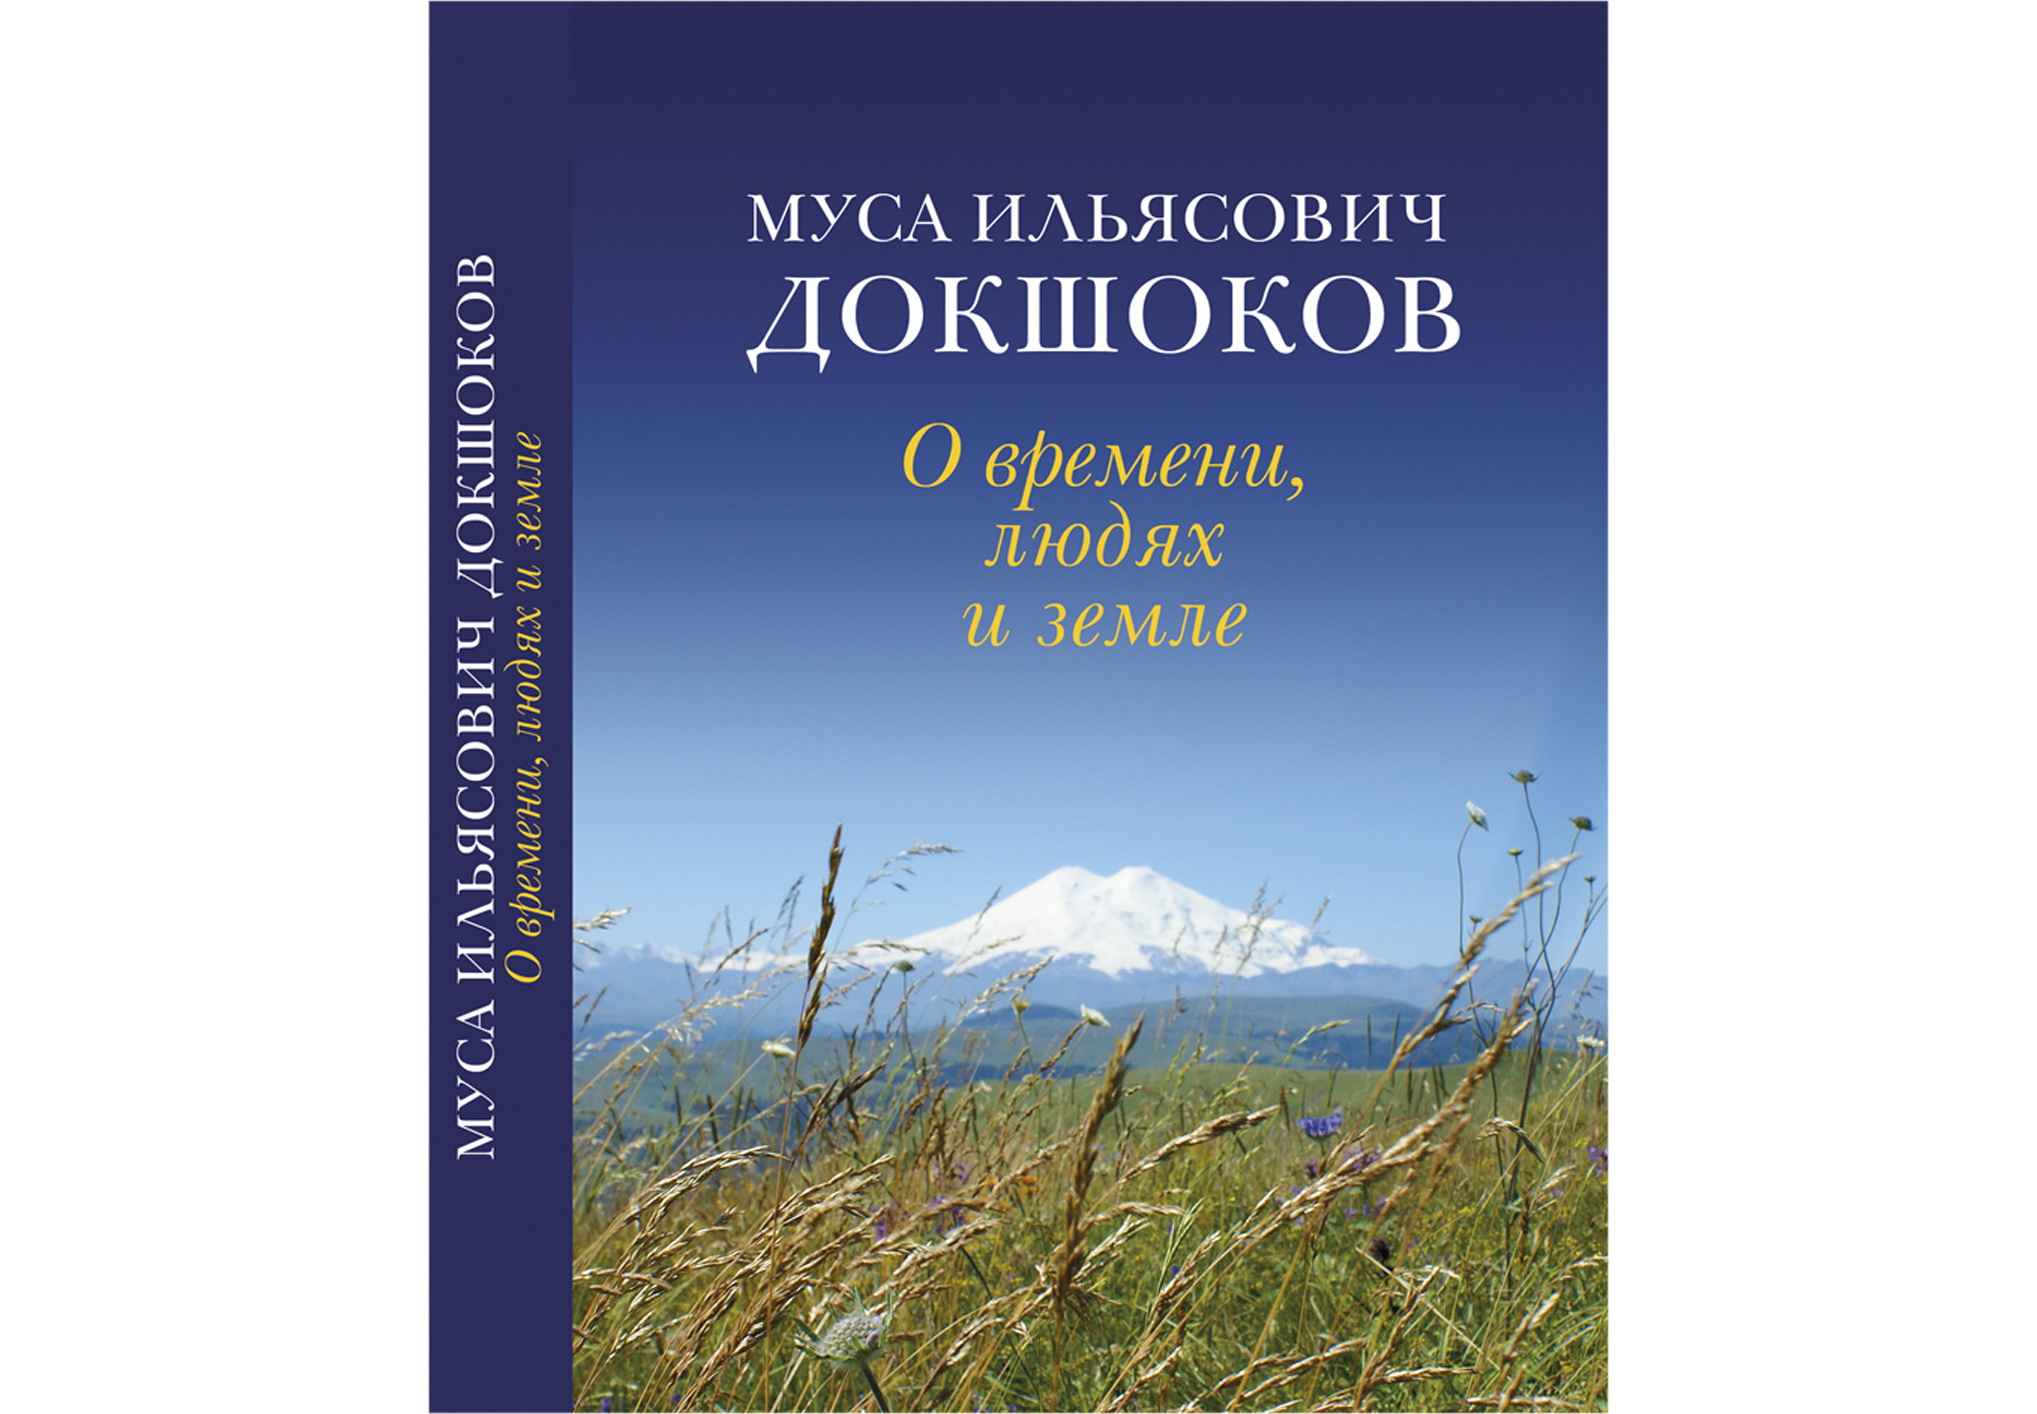 В Нальчике издана книга Мусы Докшокова